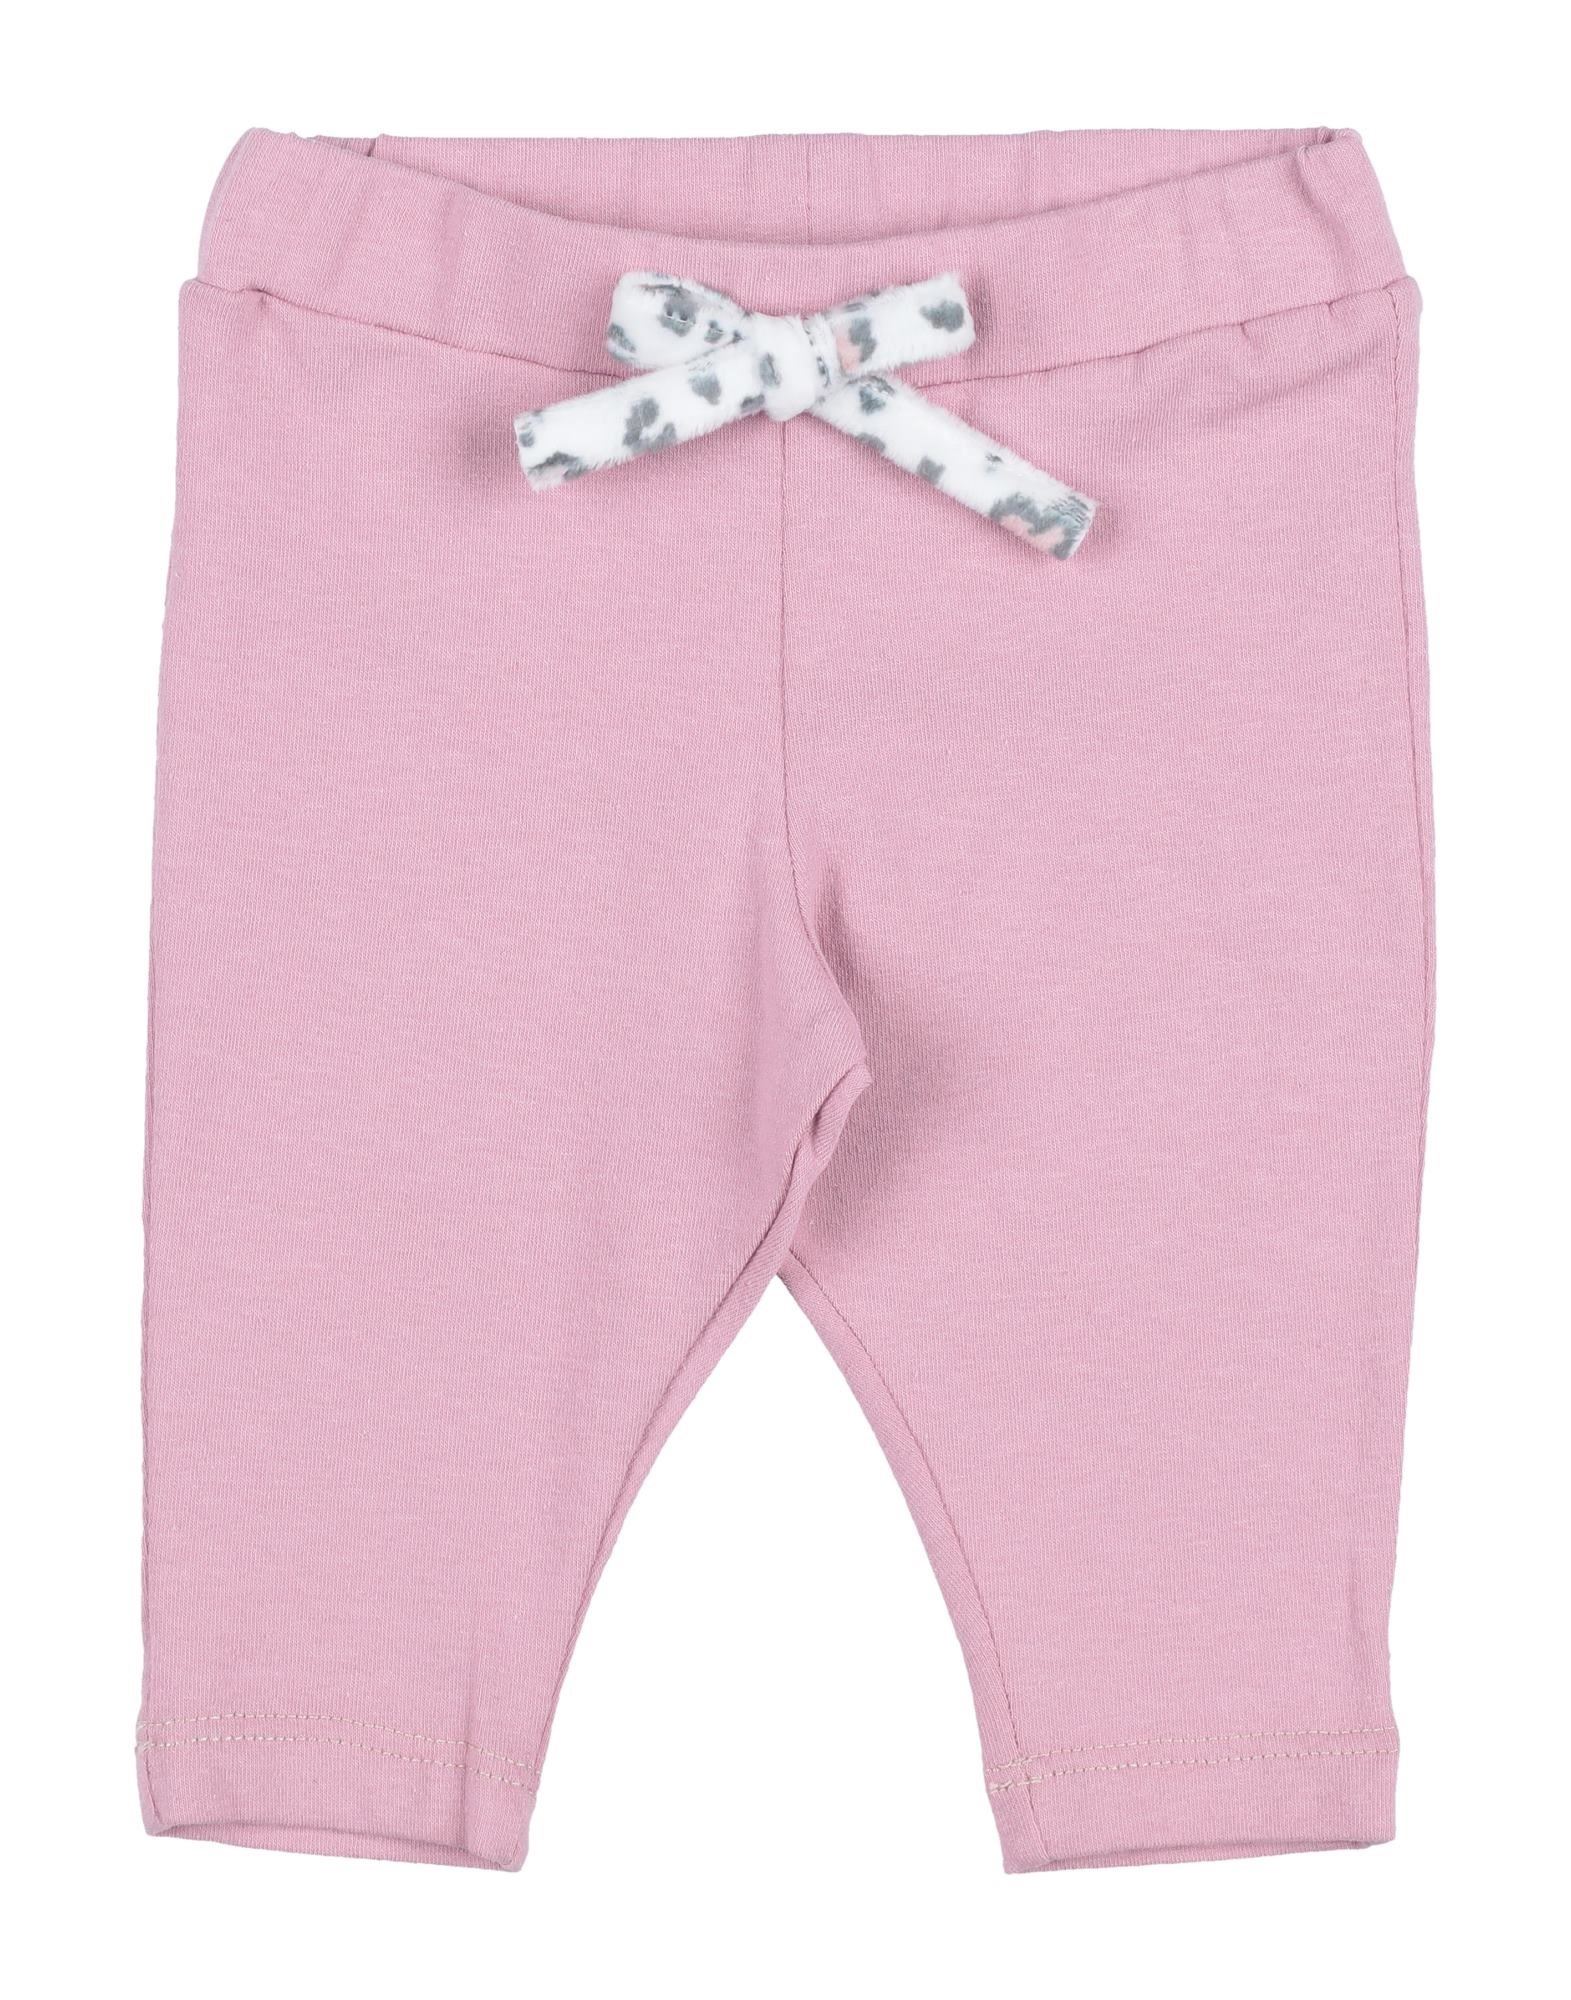 Y-clù Kids' Pants In Pink